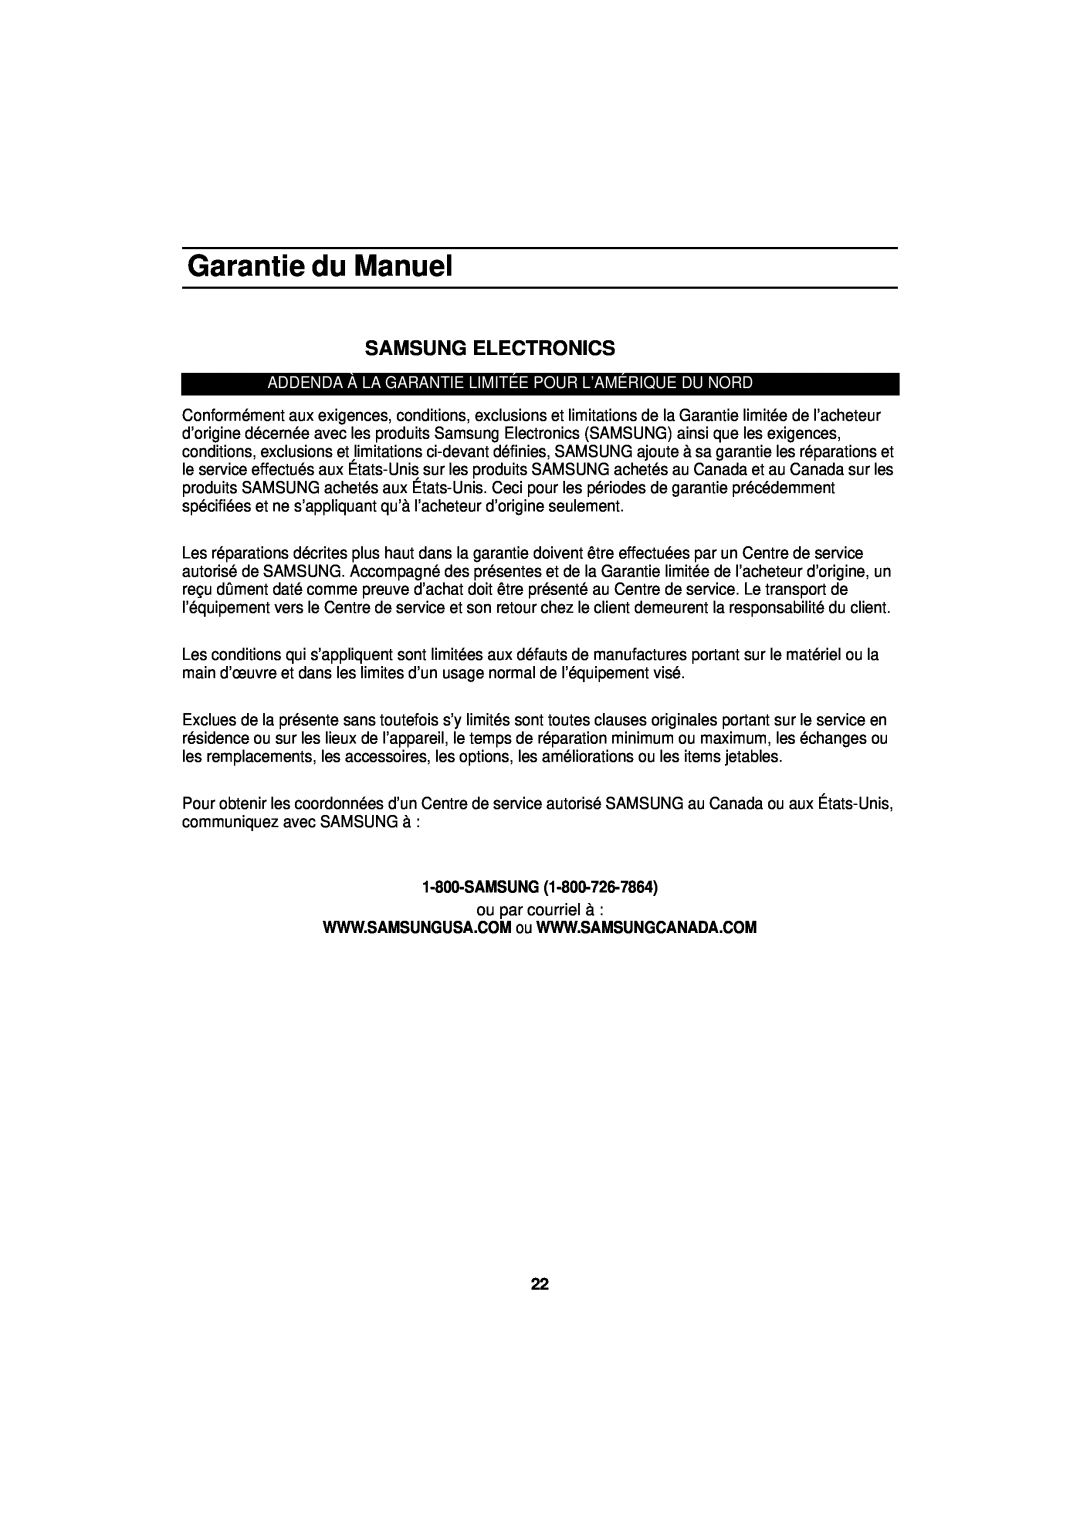 Samsung MW830BA manual Garantie du Manuel, Samsung Electronics, Addenda À La Garantie Limitée Pour L’Amérique Du Nord 